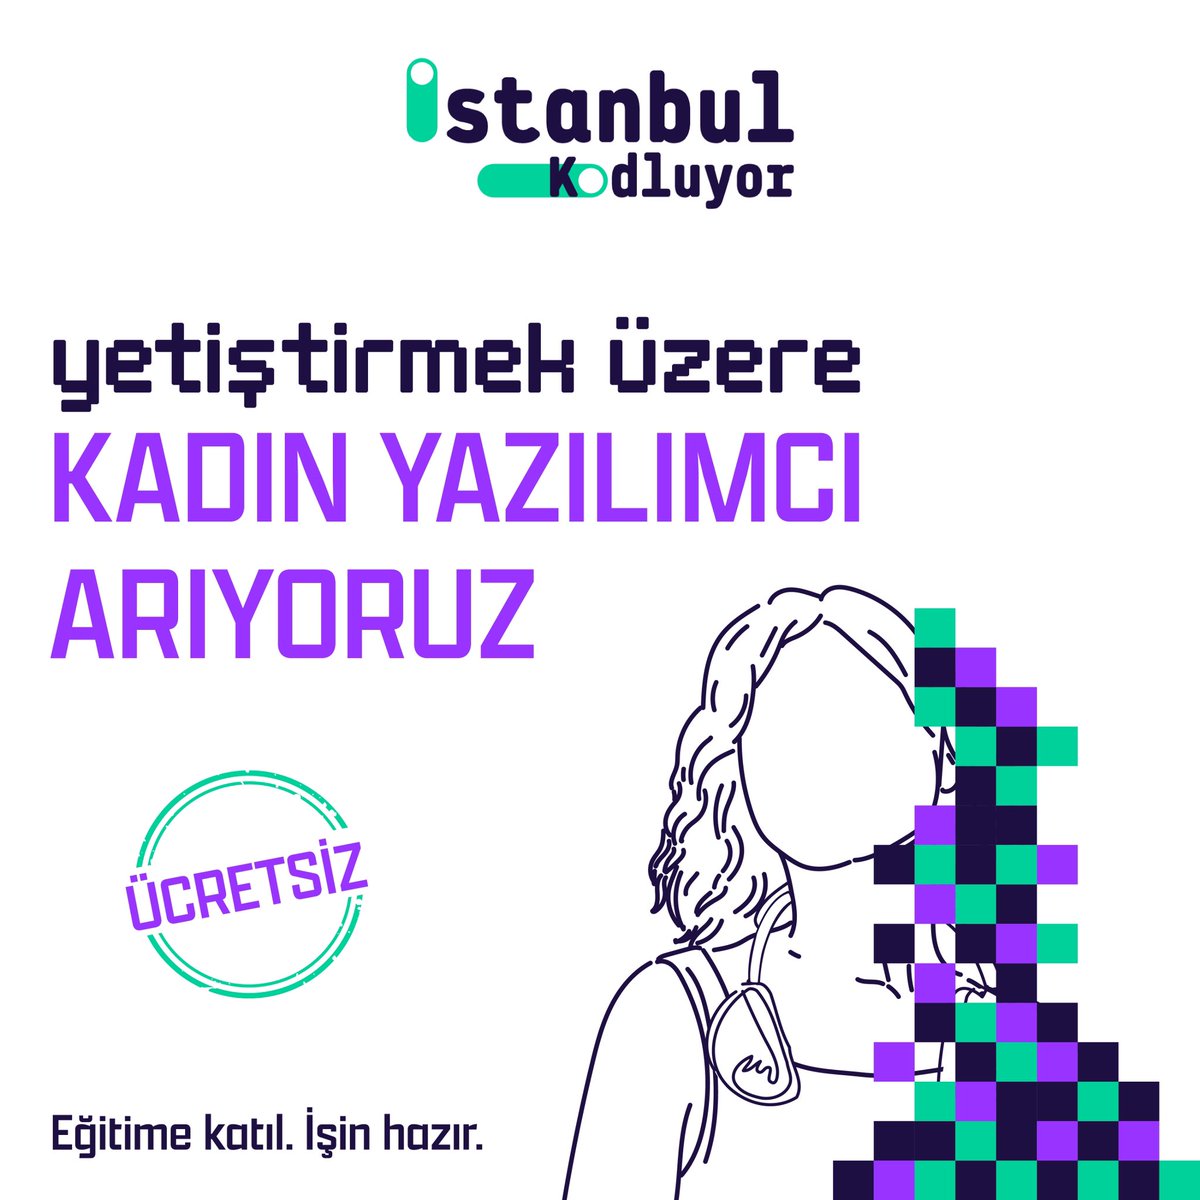 Kadınların gücünü kodlarla bir araya getirmeye devam ediyoruz! 🚀 Haydi sen de hemen başvur, kadın yazılımcılar arasında yerini al. 💪💻 Detaylı bilgi ve başvuru için istanbulkodluyor.com adresini ziyaret etmeyi unutma! 🔗 #İstanbulKodluyor #Kadınİstihdamı #Yazılım #Tobeto